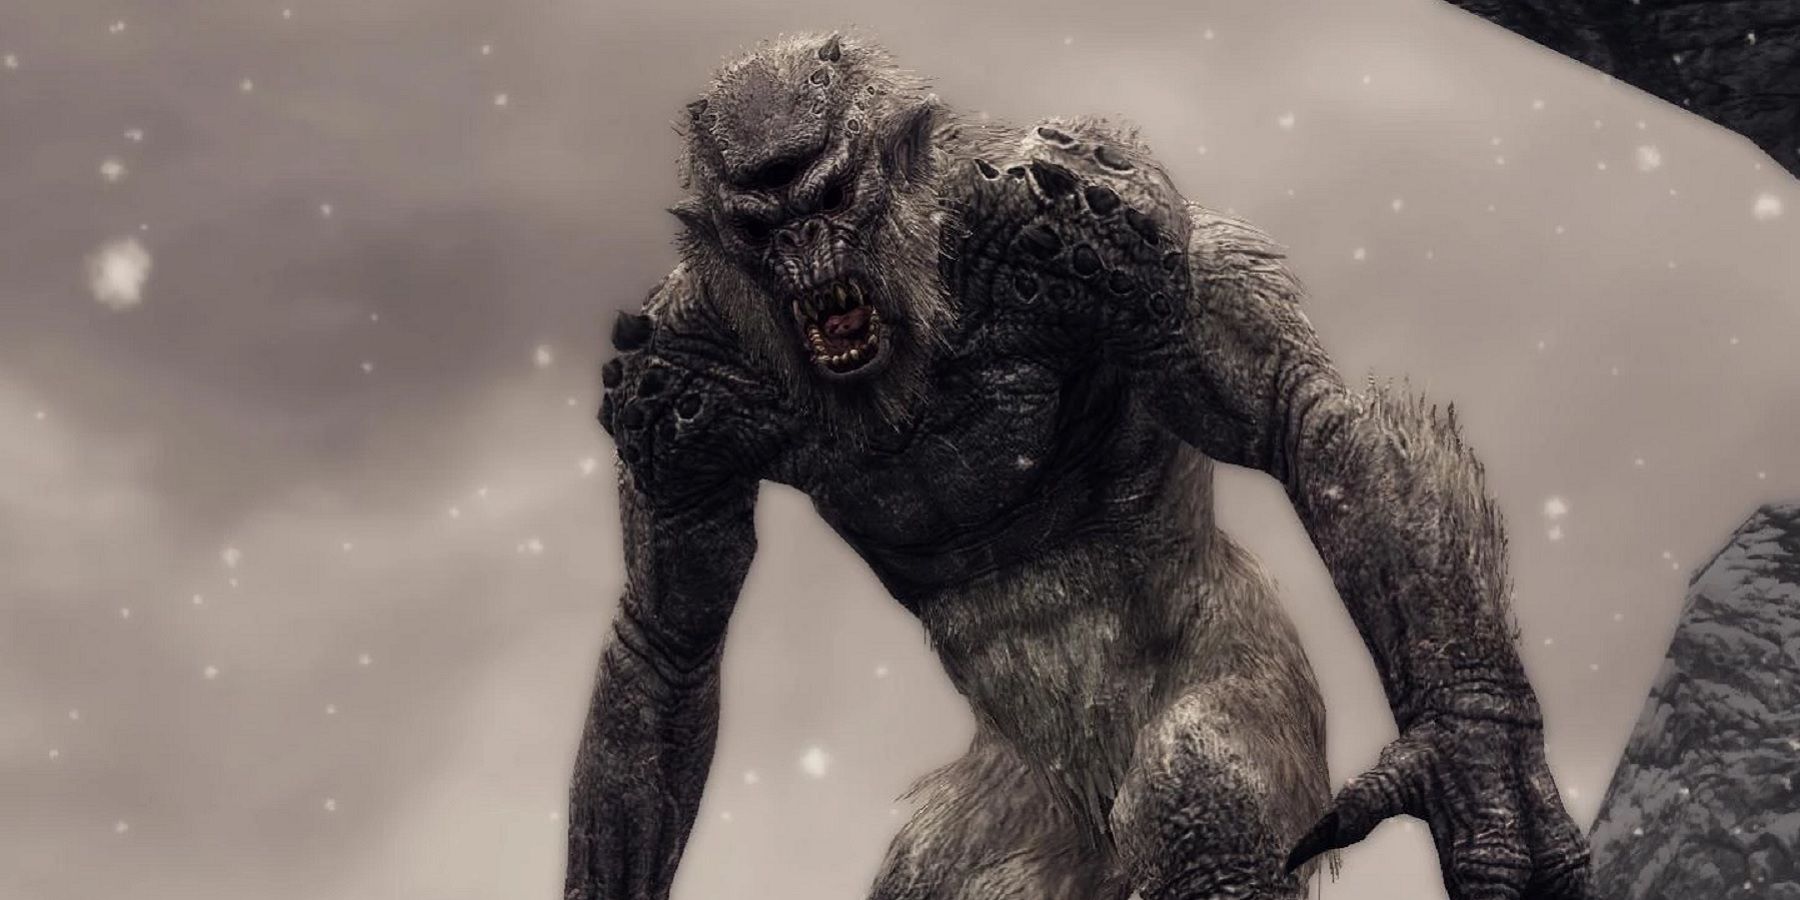 skyrim-frost-troll